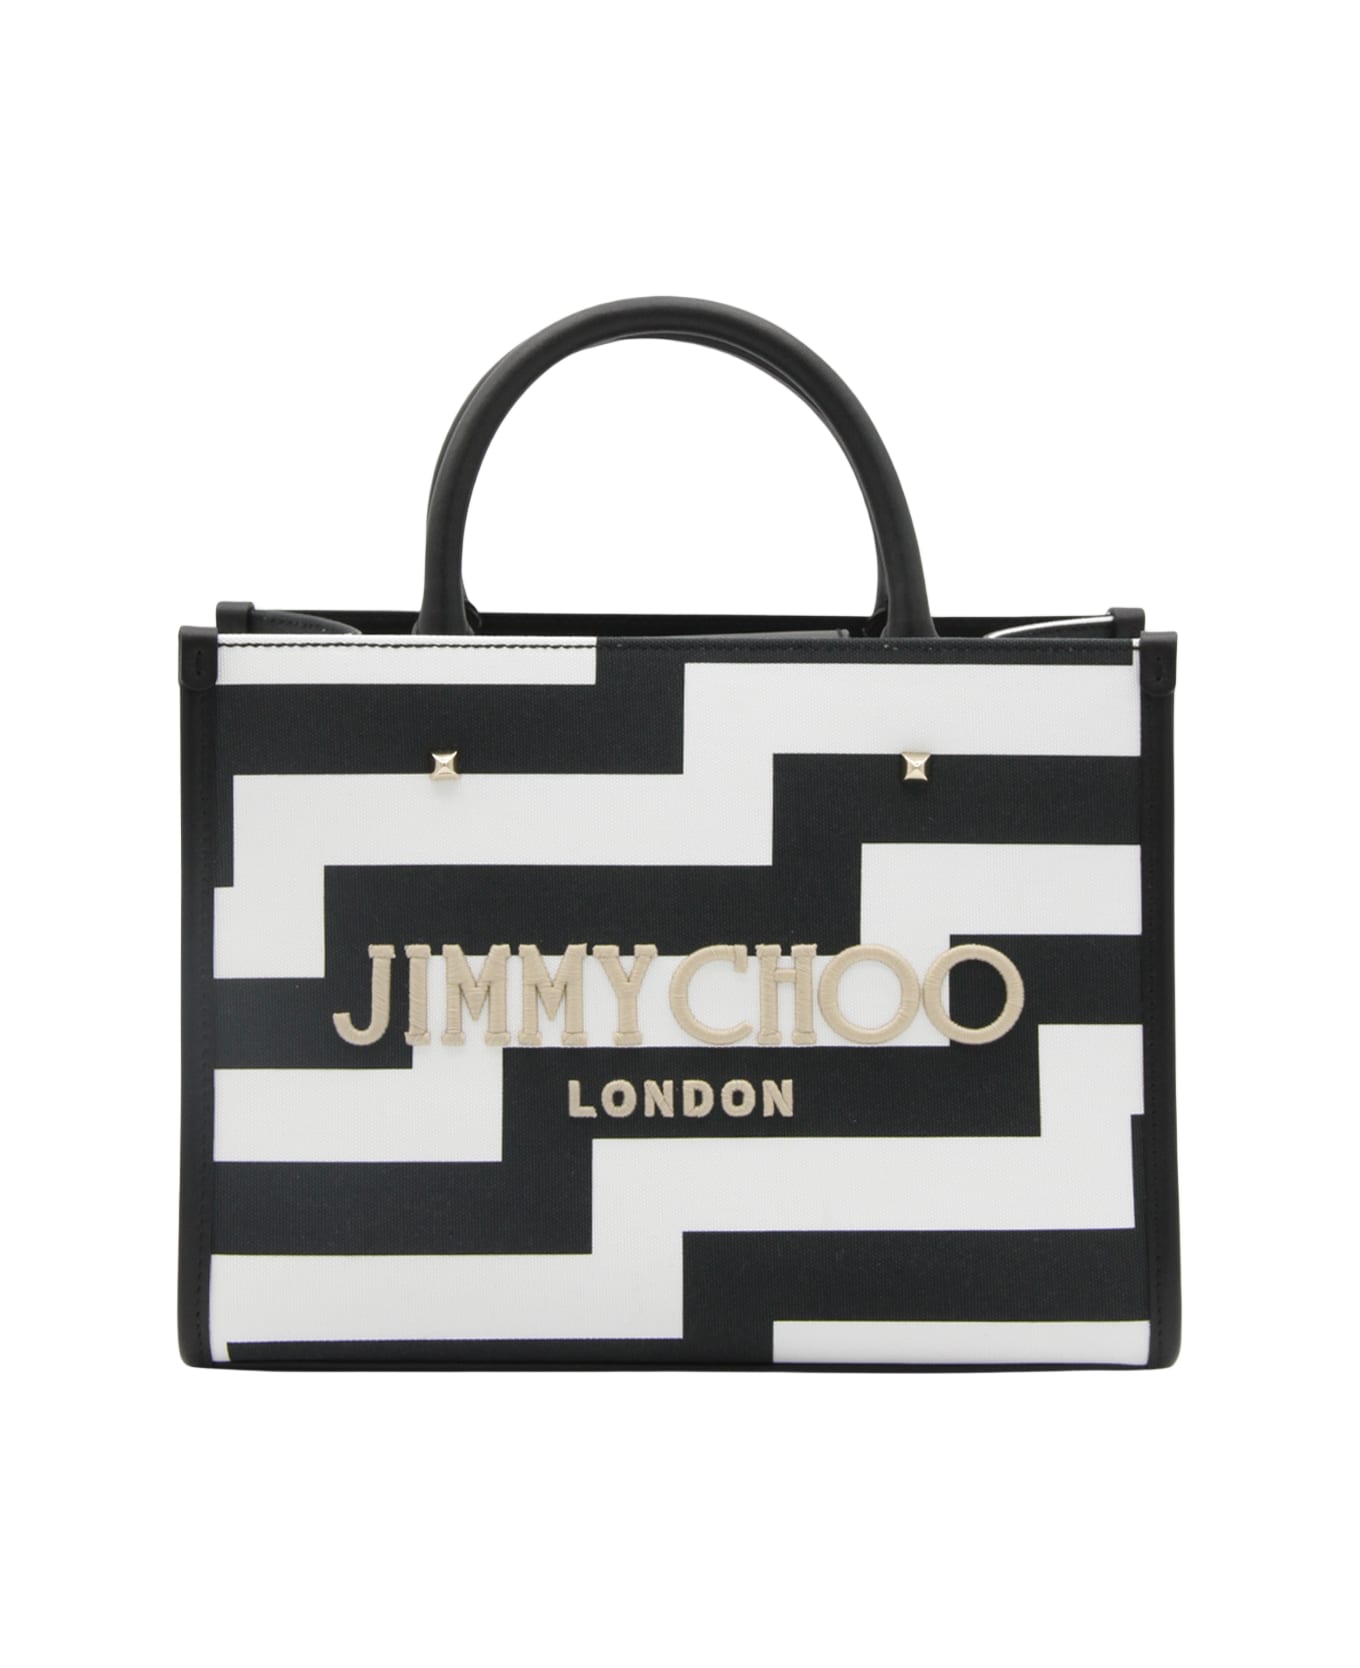 Jimmy Choo Black And White Avenute Medium Tote Bag - 1C0019